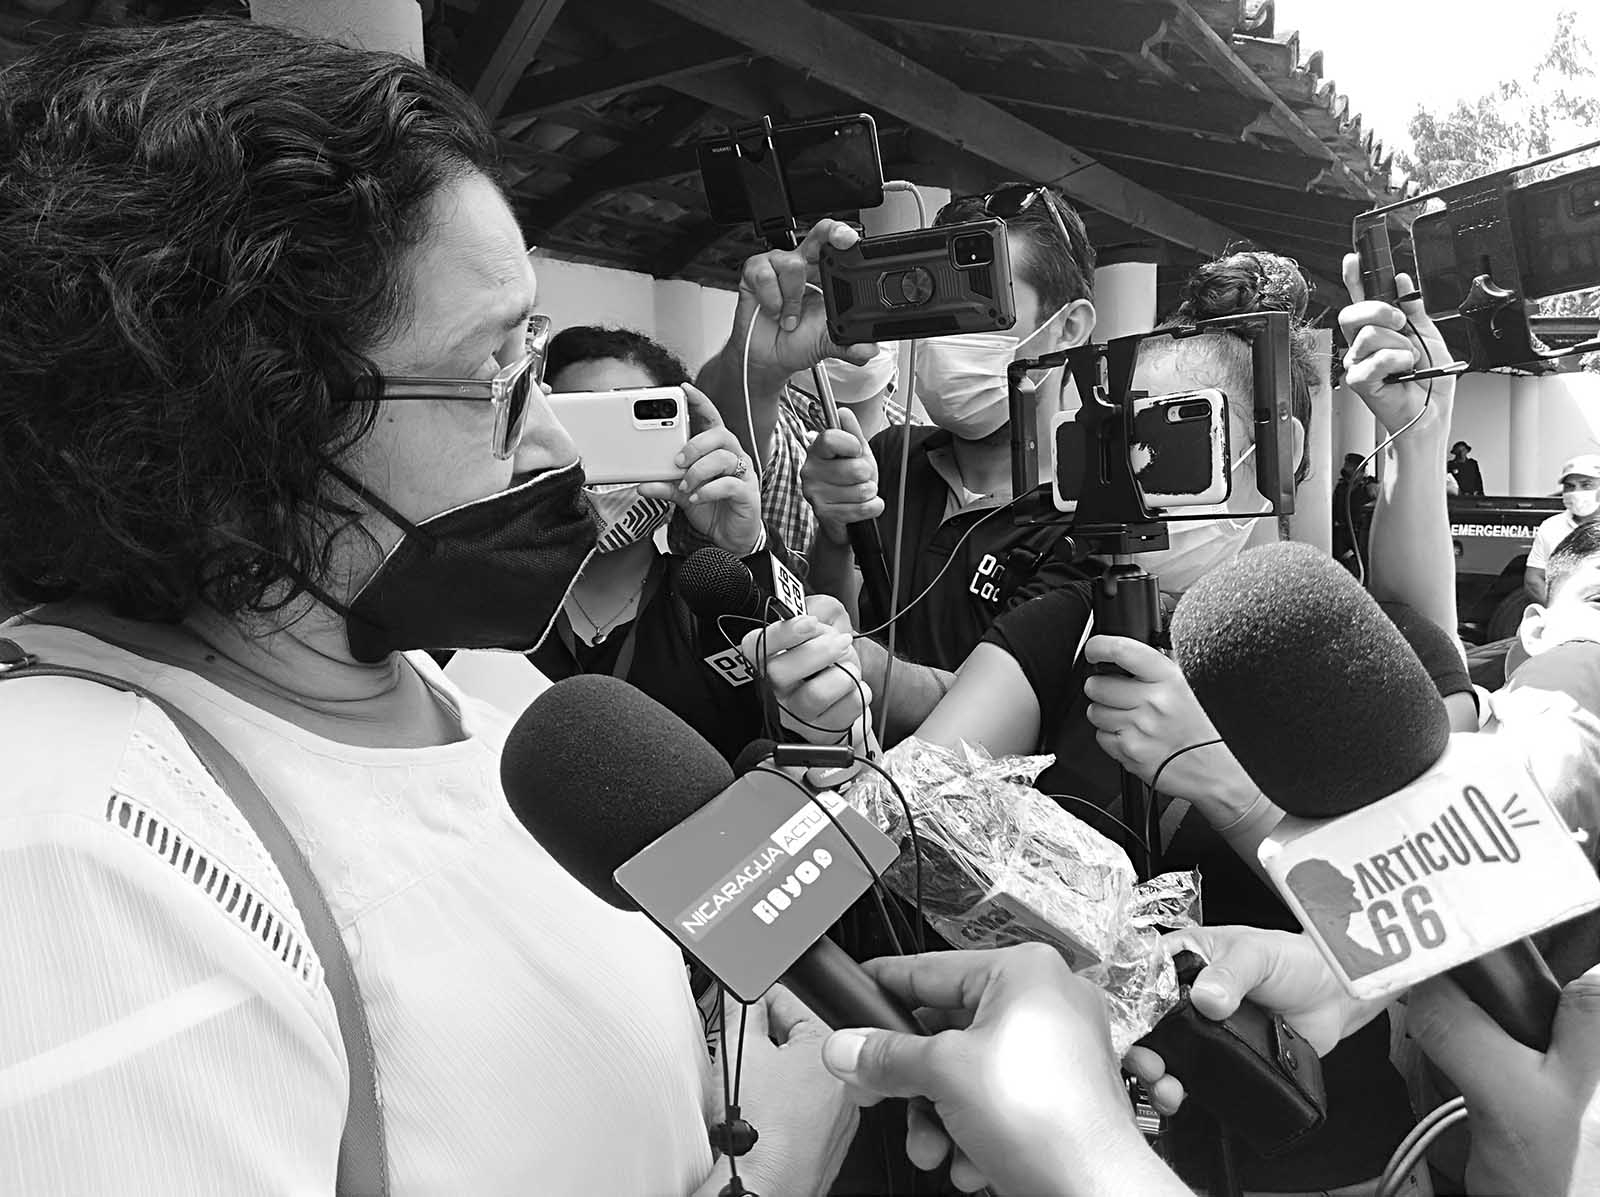 Periodismo perseguido: el costo de informar bajo dictadura